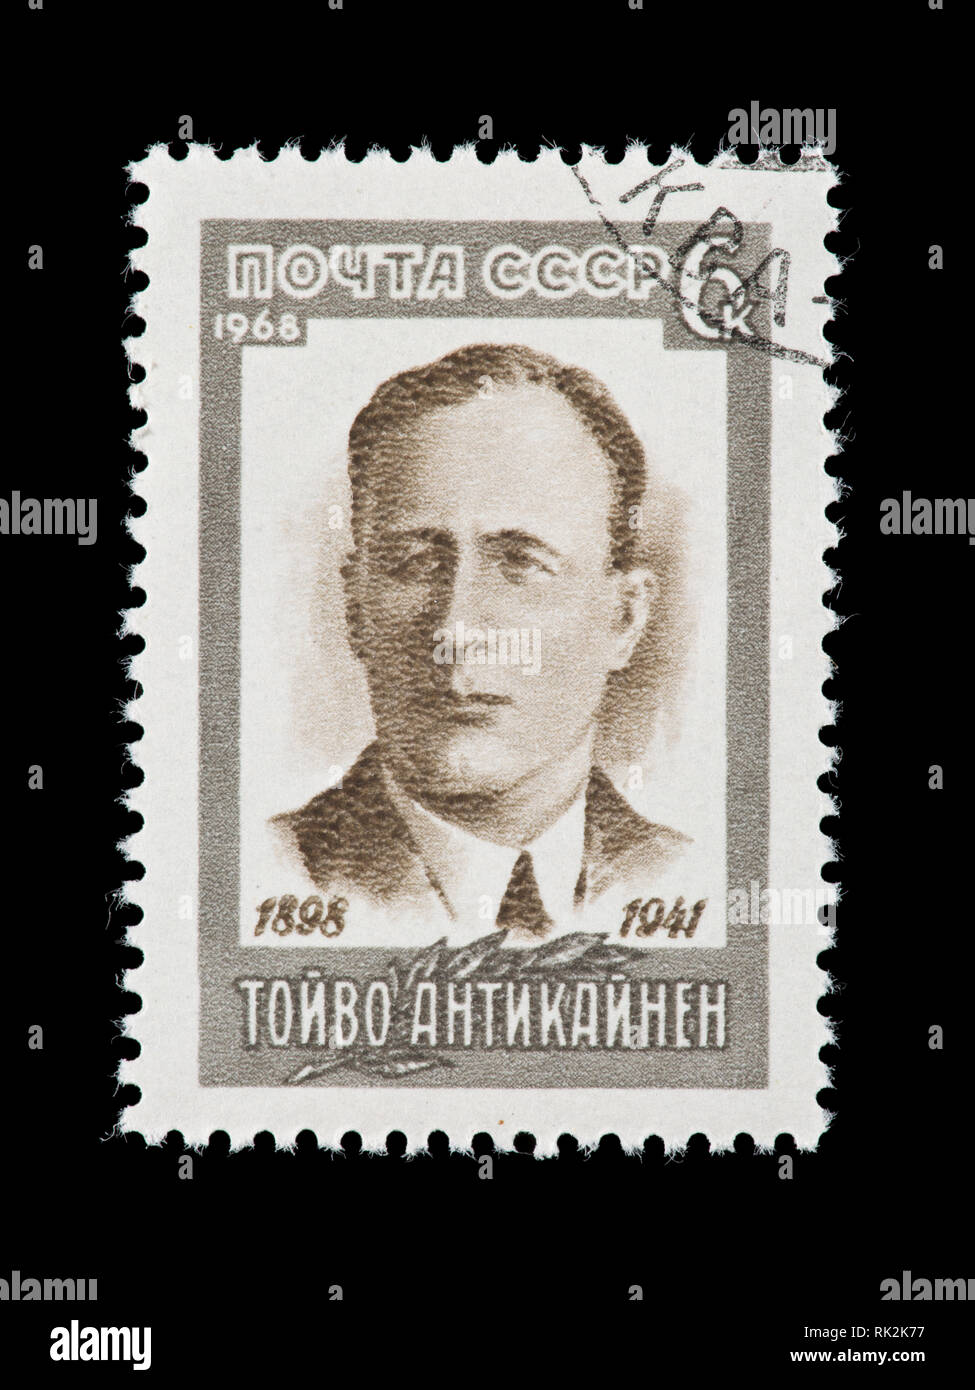 Francobollo dall'Unione Sovietica raffiguranti Toyvo Antikaynen, lavoratori finlandese organizzatore. Foto Stock